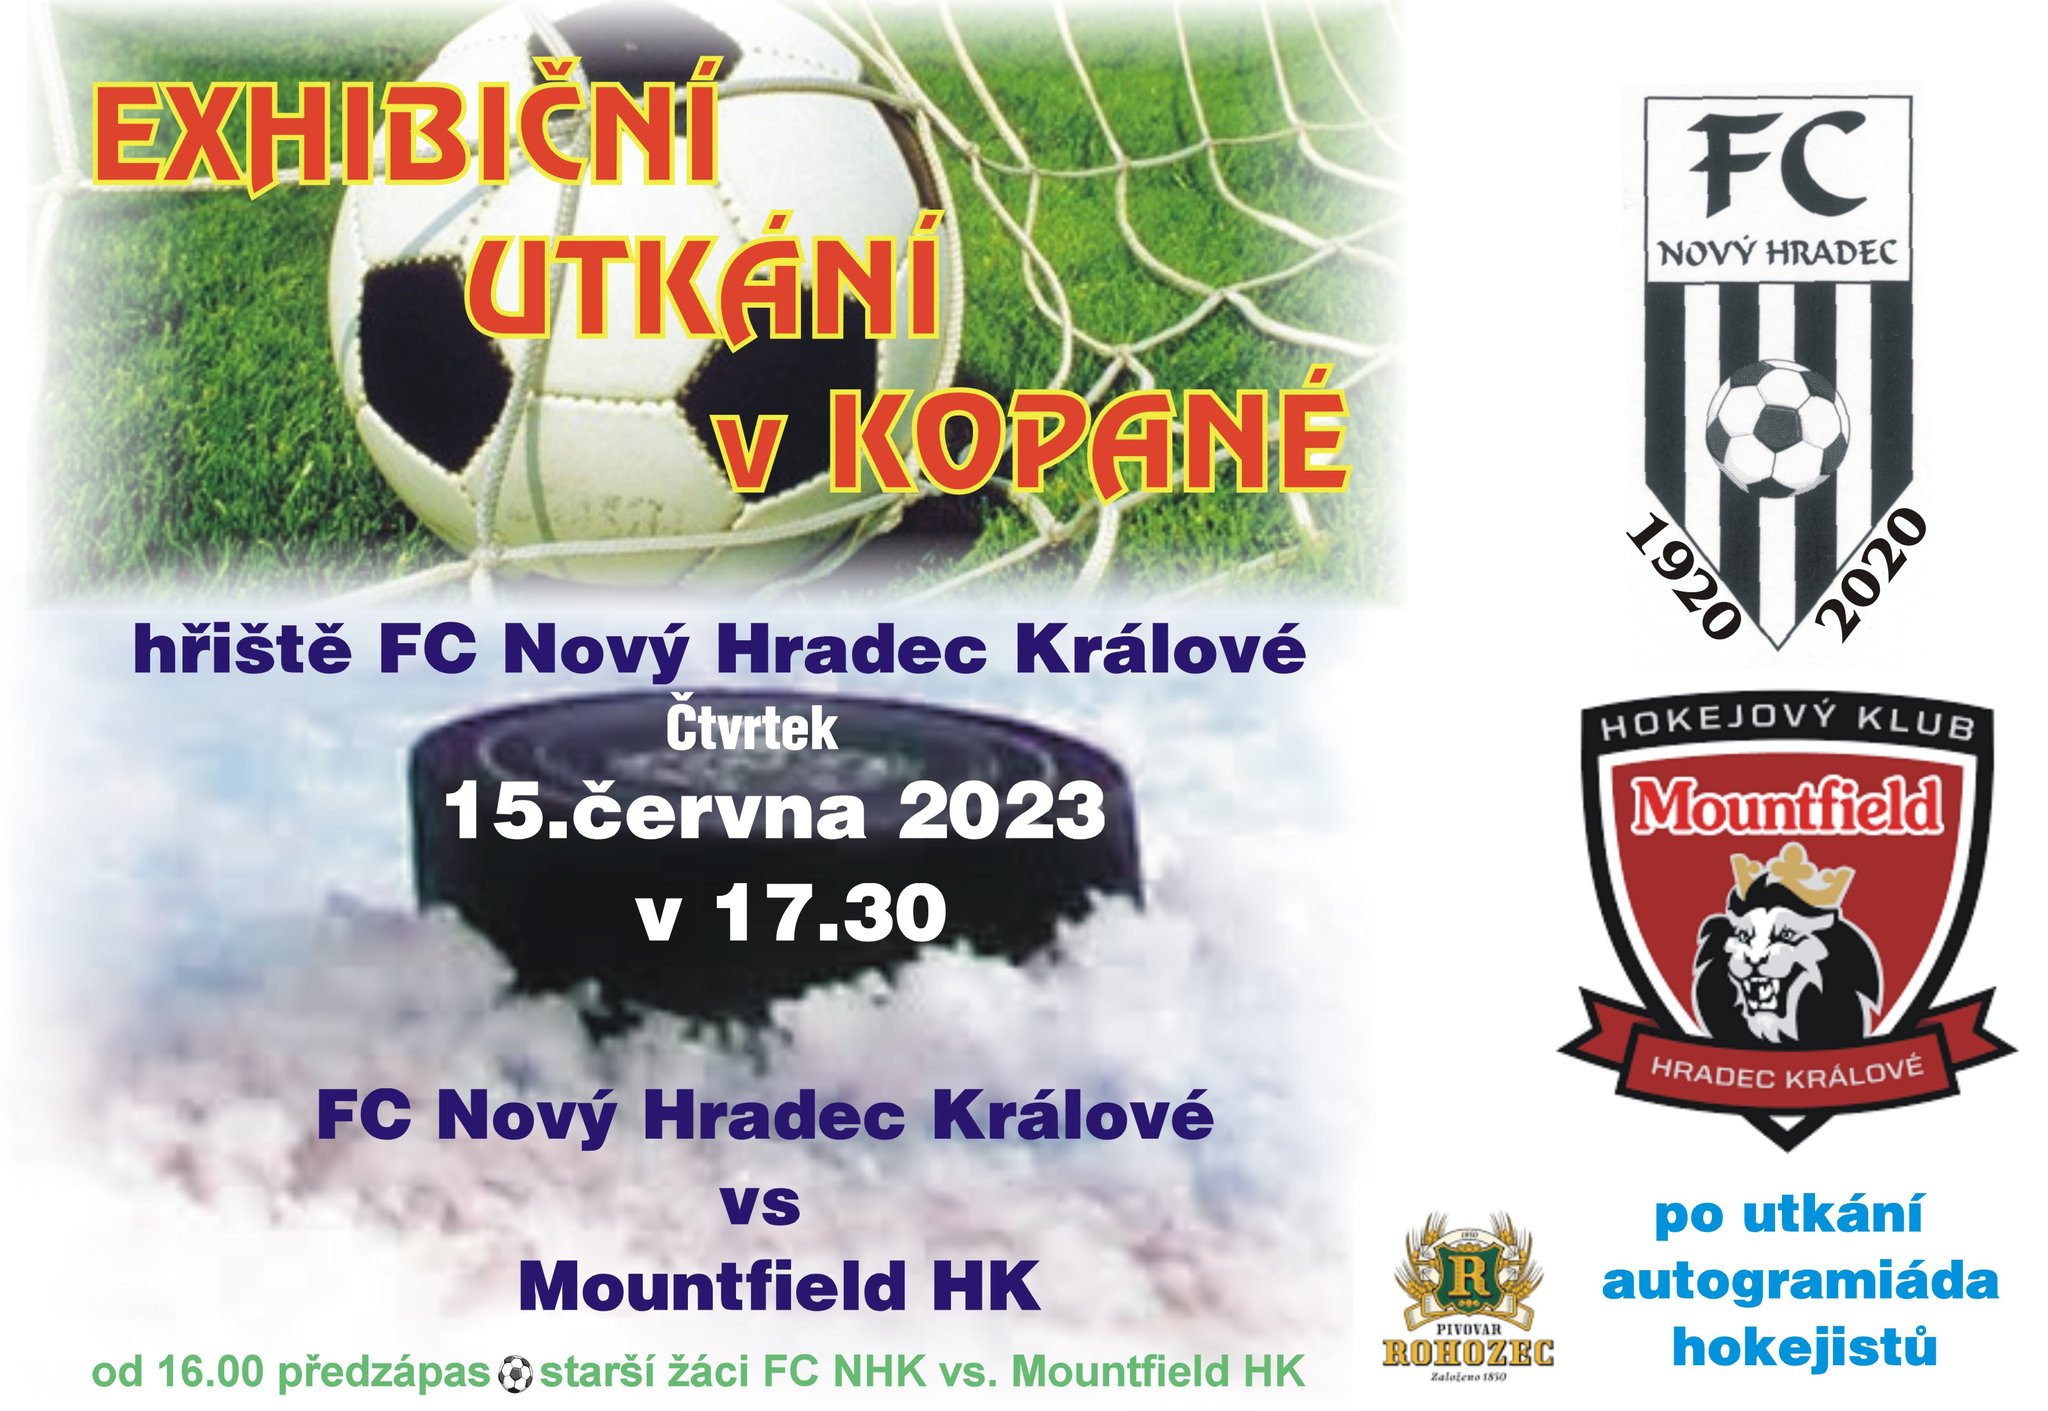 Exhibiční utkání v kopané: FC Nový Hradec Králov vs Mountfield HK